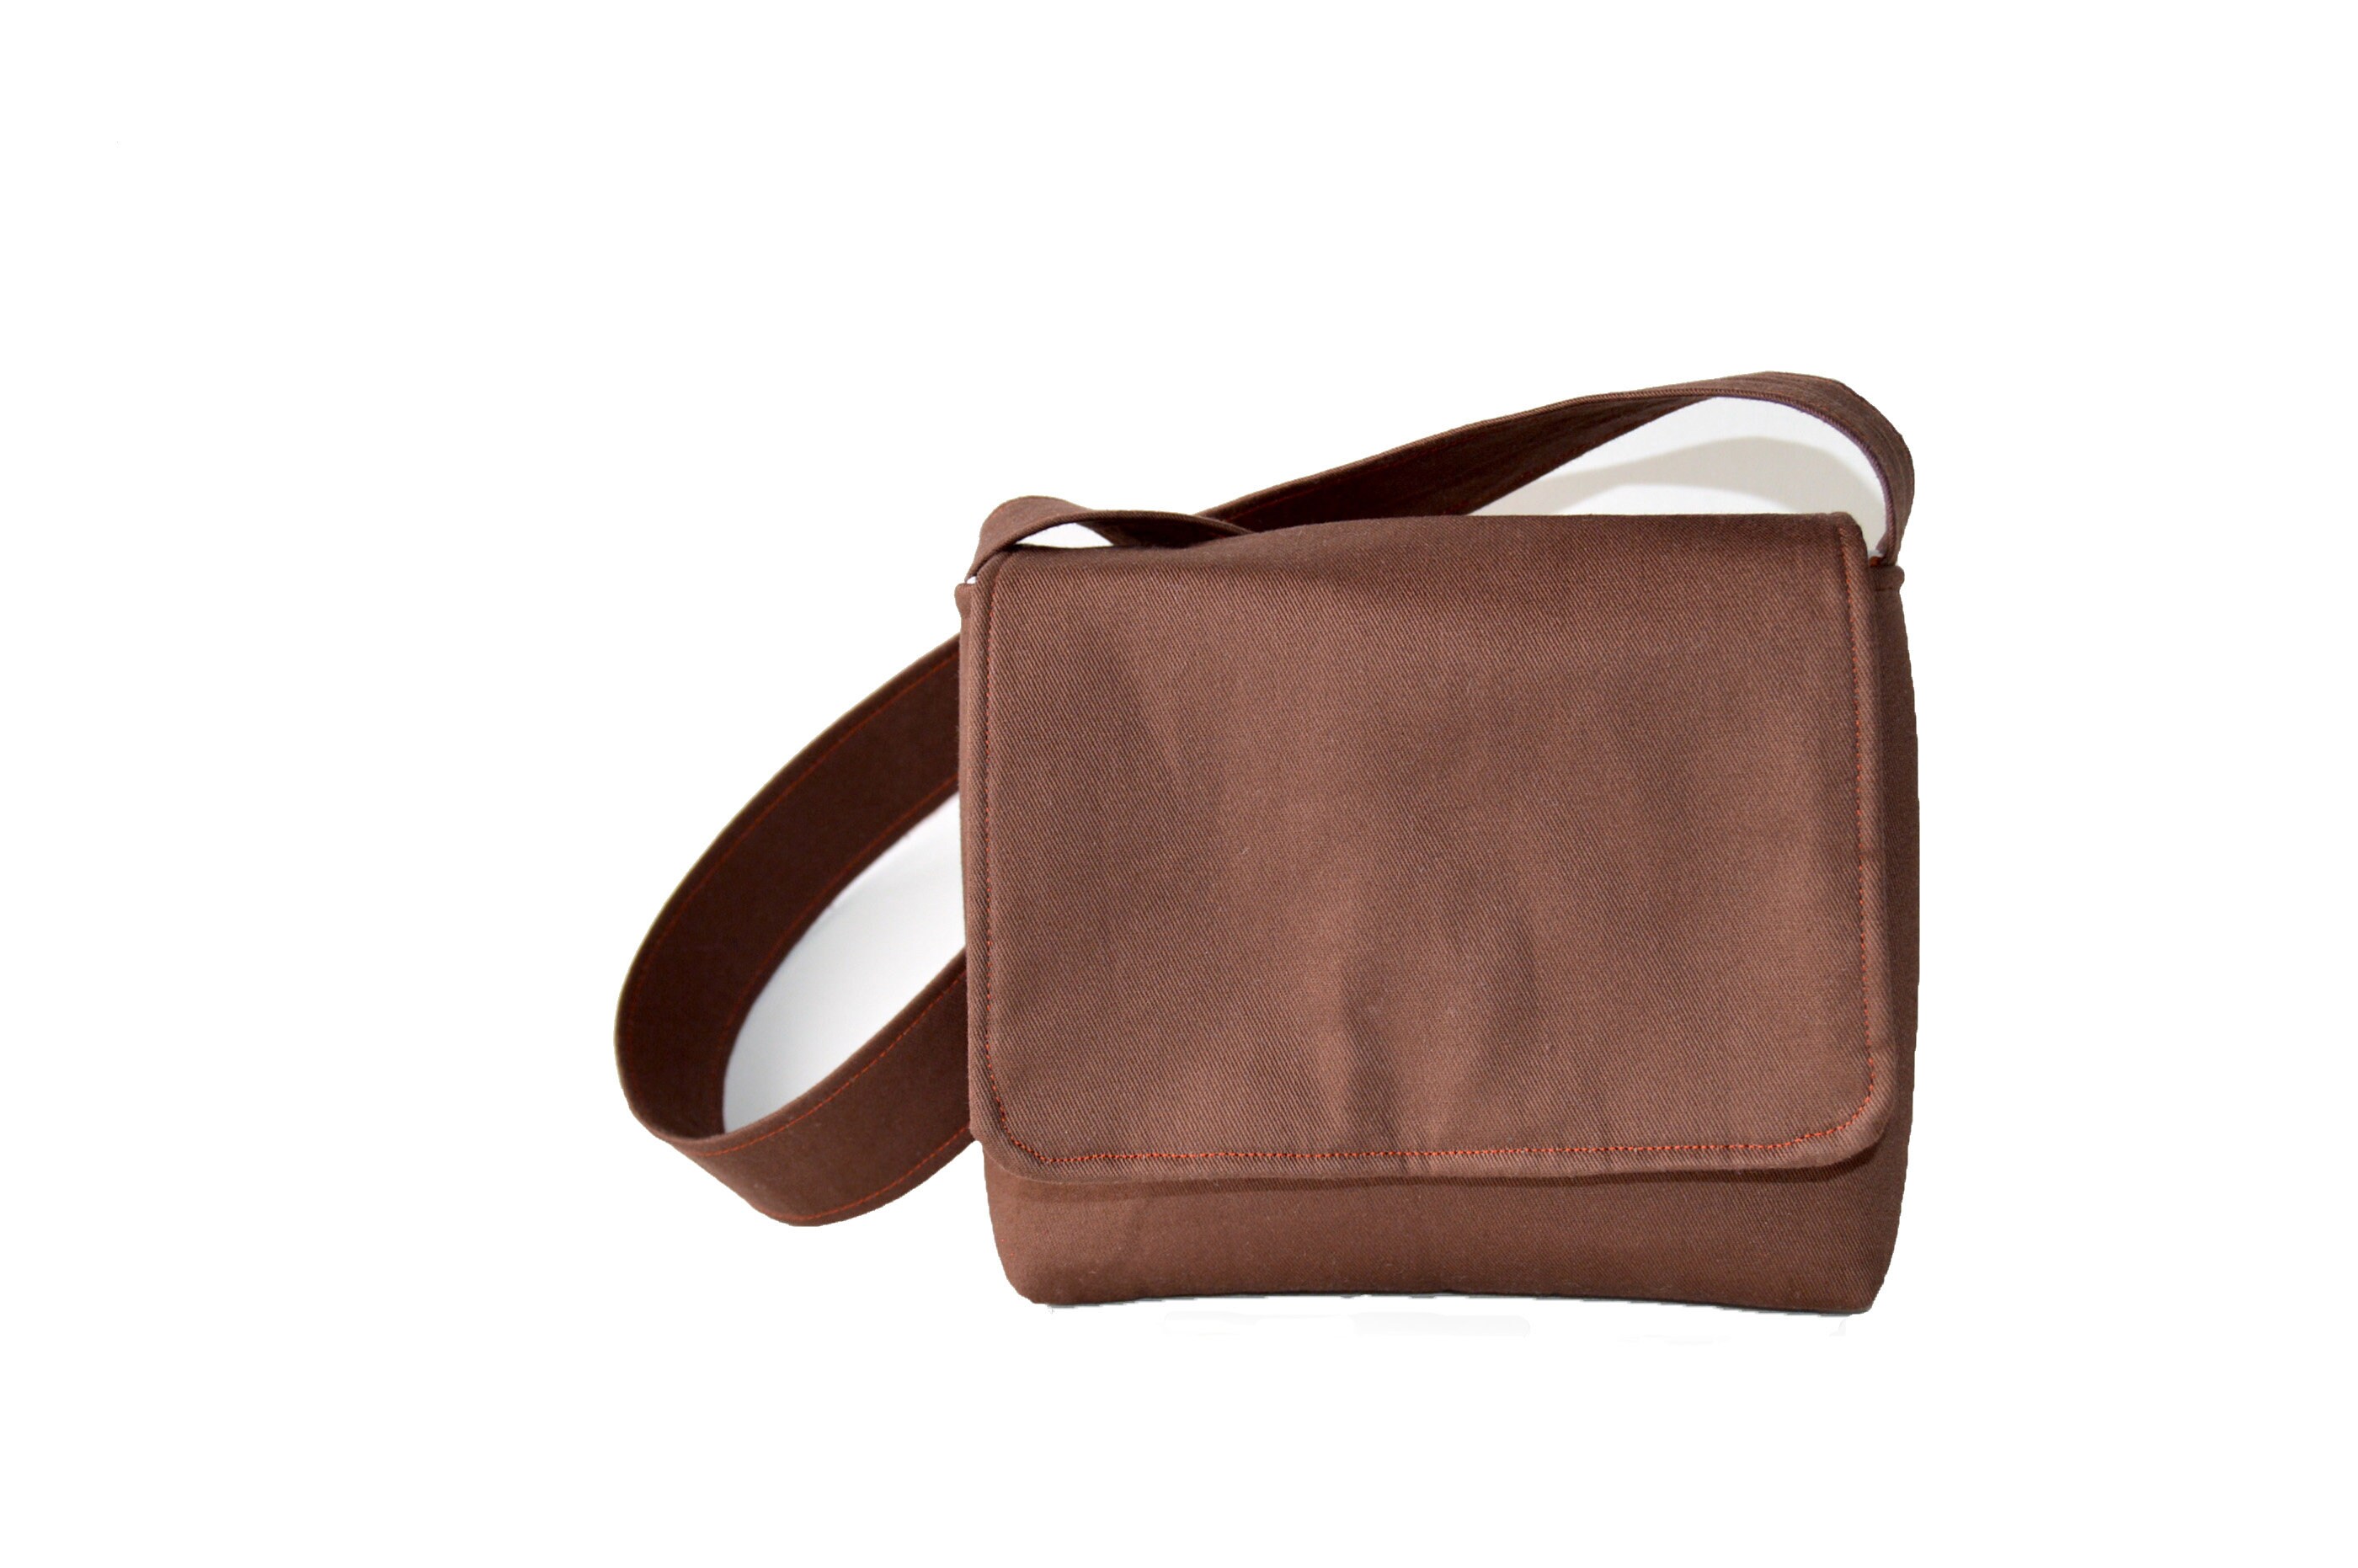 high quality】Sling Bag Men Small Messenger Bag Canvas Casual Shoulder Bag  Mini Mobile Phone Bag Black